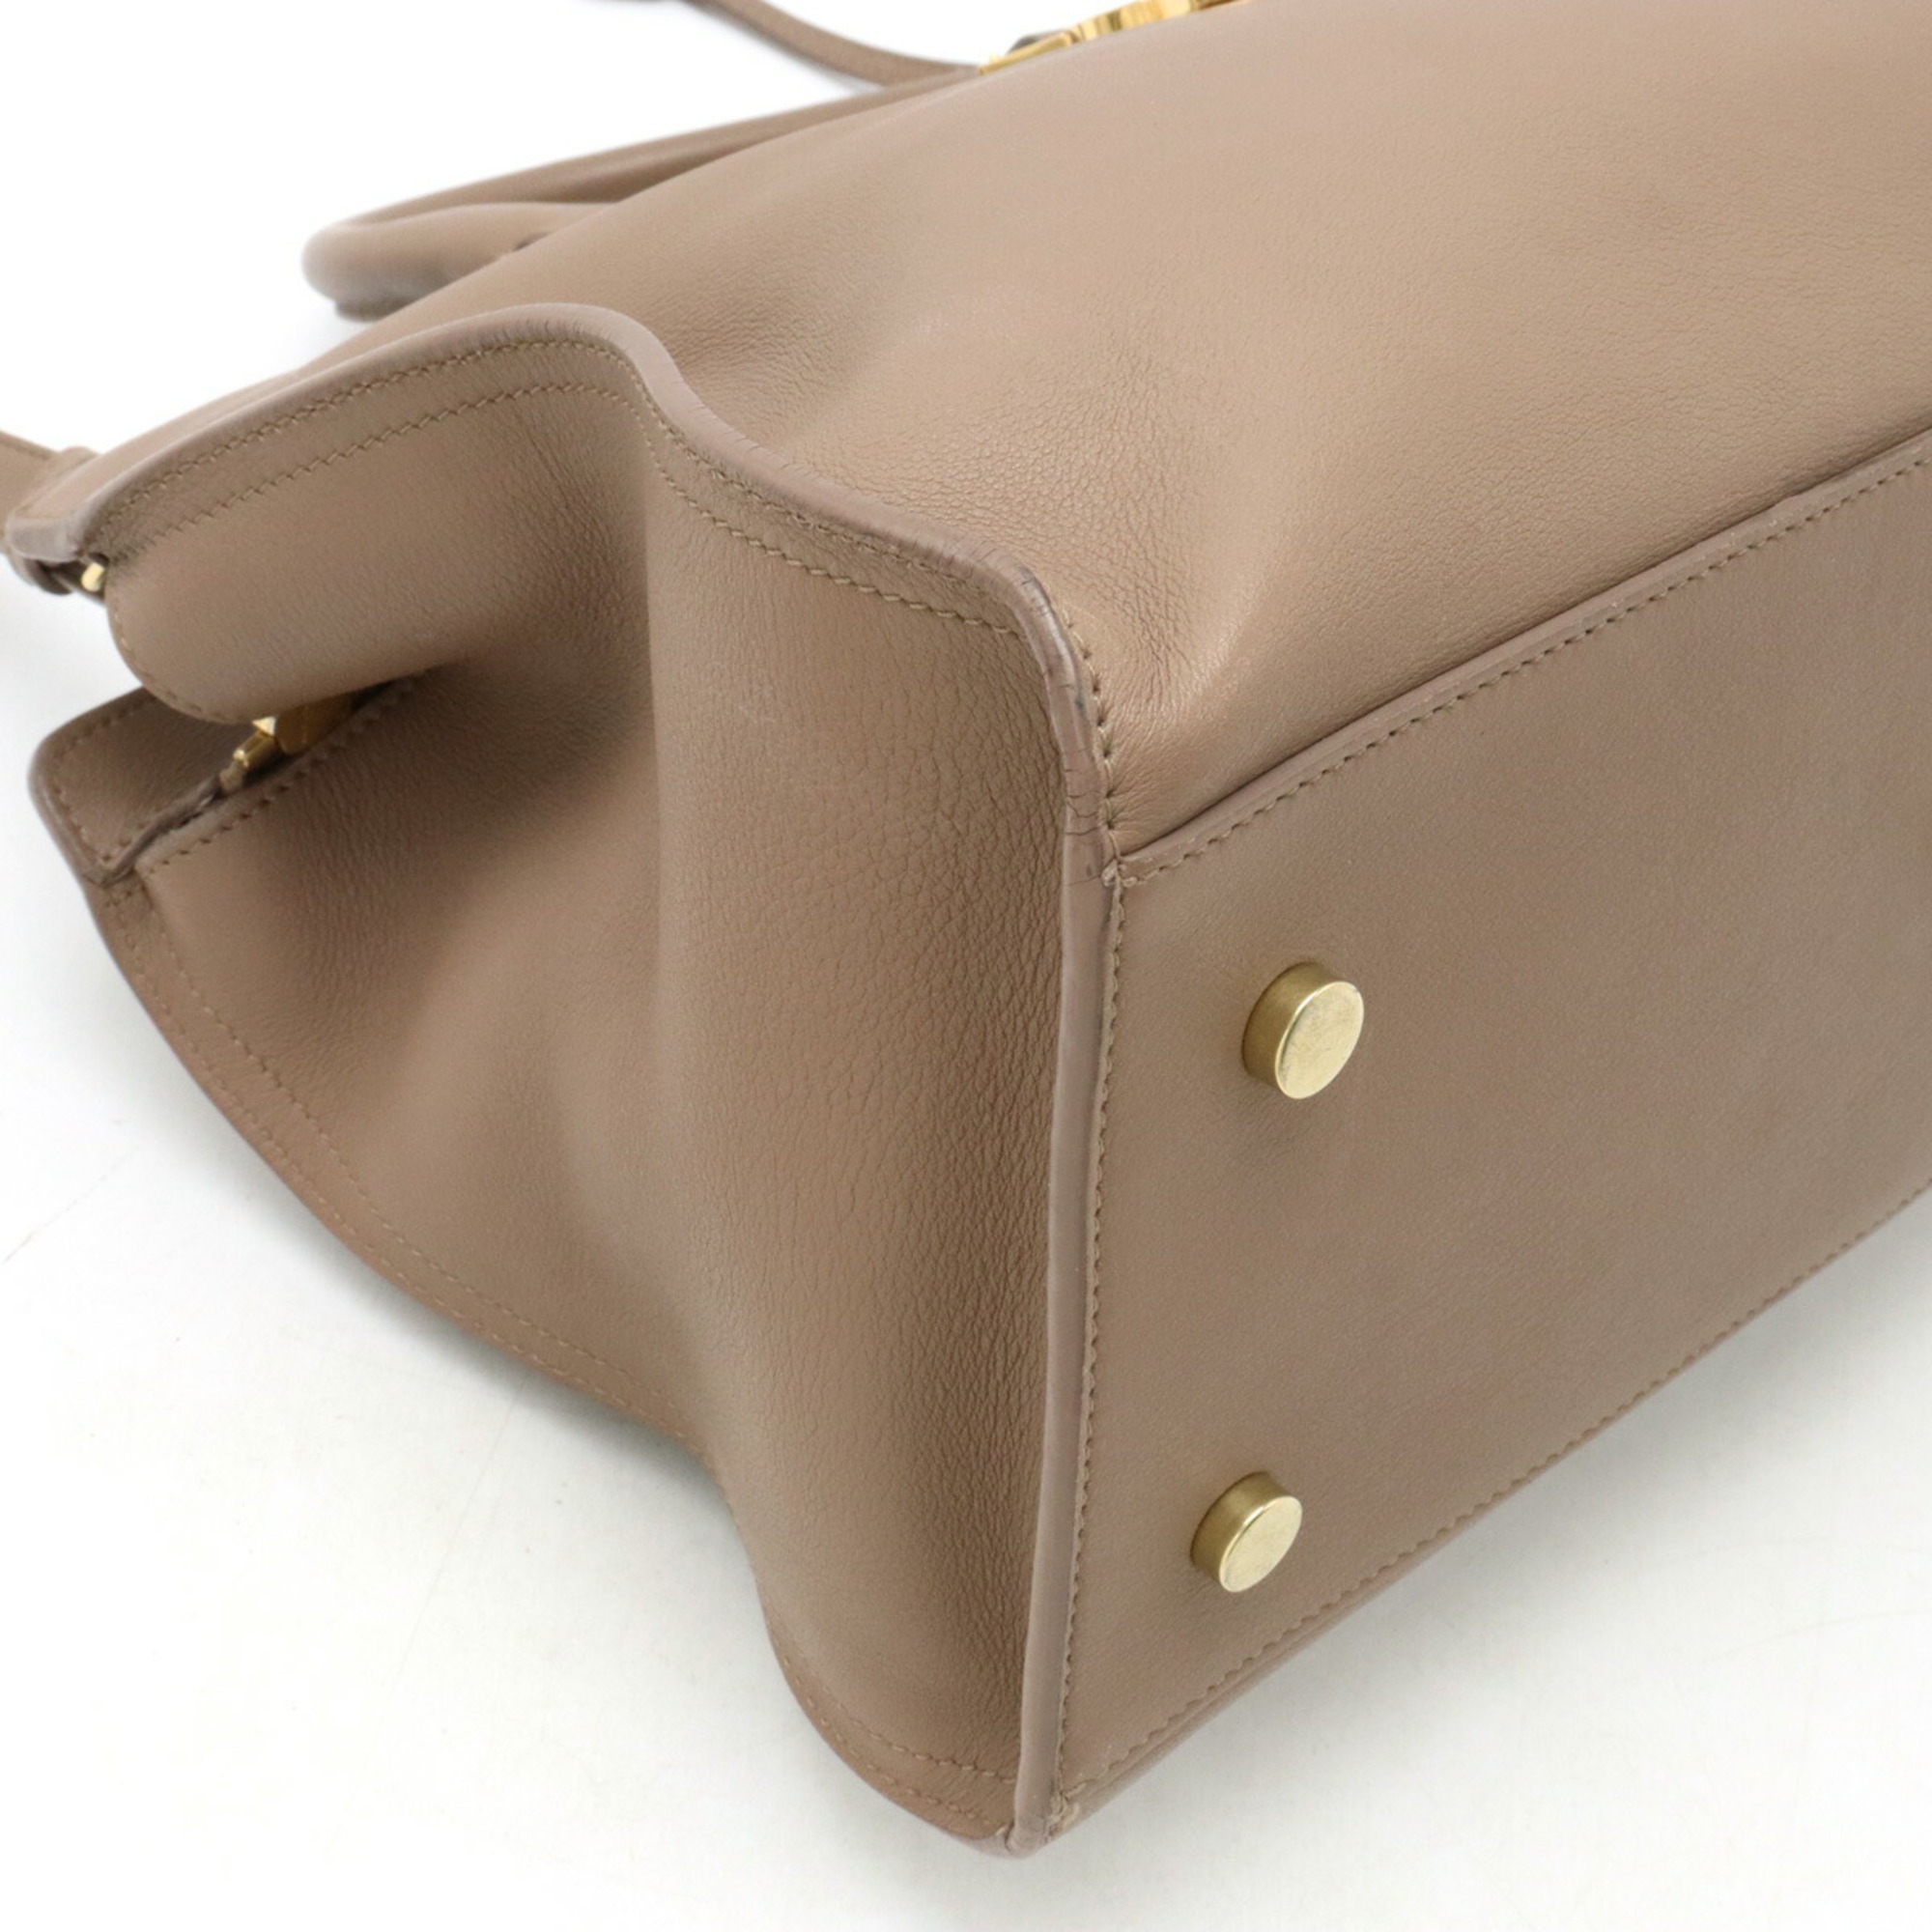 SAINT LAURENT PARIS YSL Yves Saint Laurent Cabas Small Handbag Shoulder Bag Leather Greige 424869